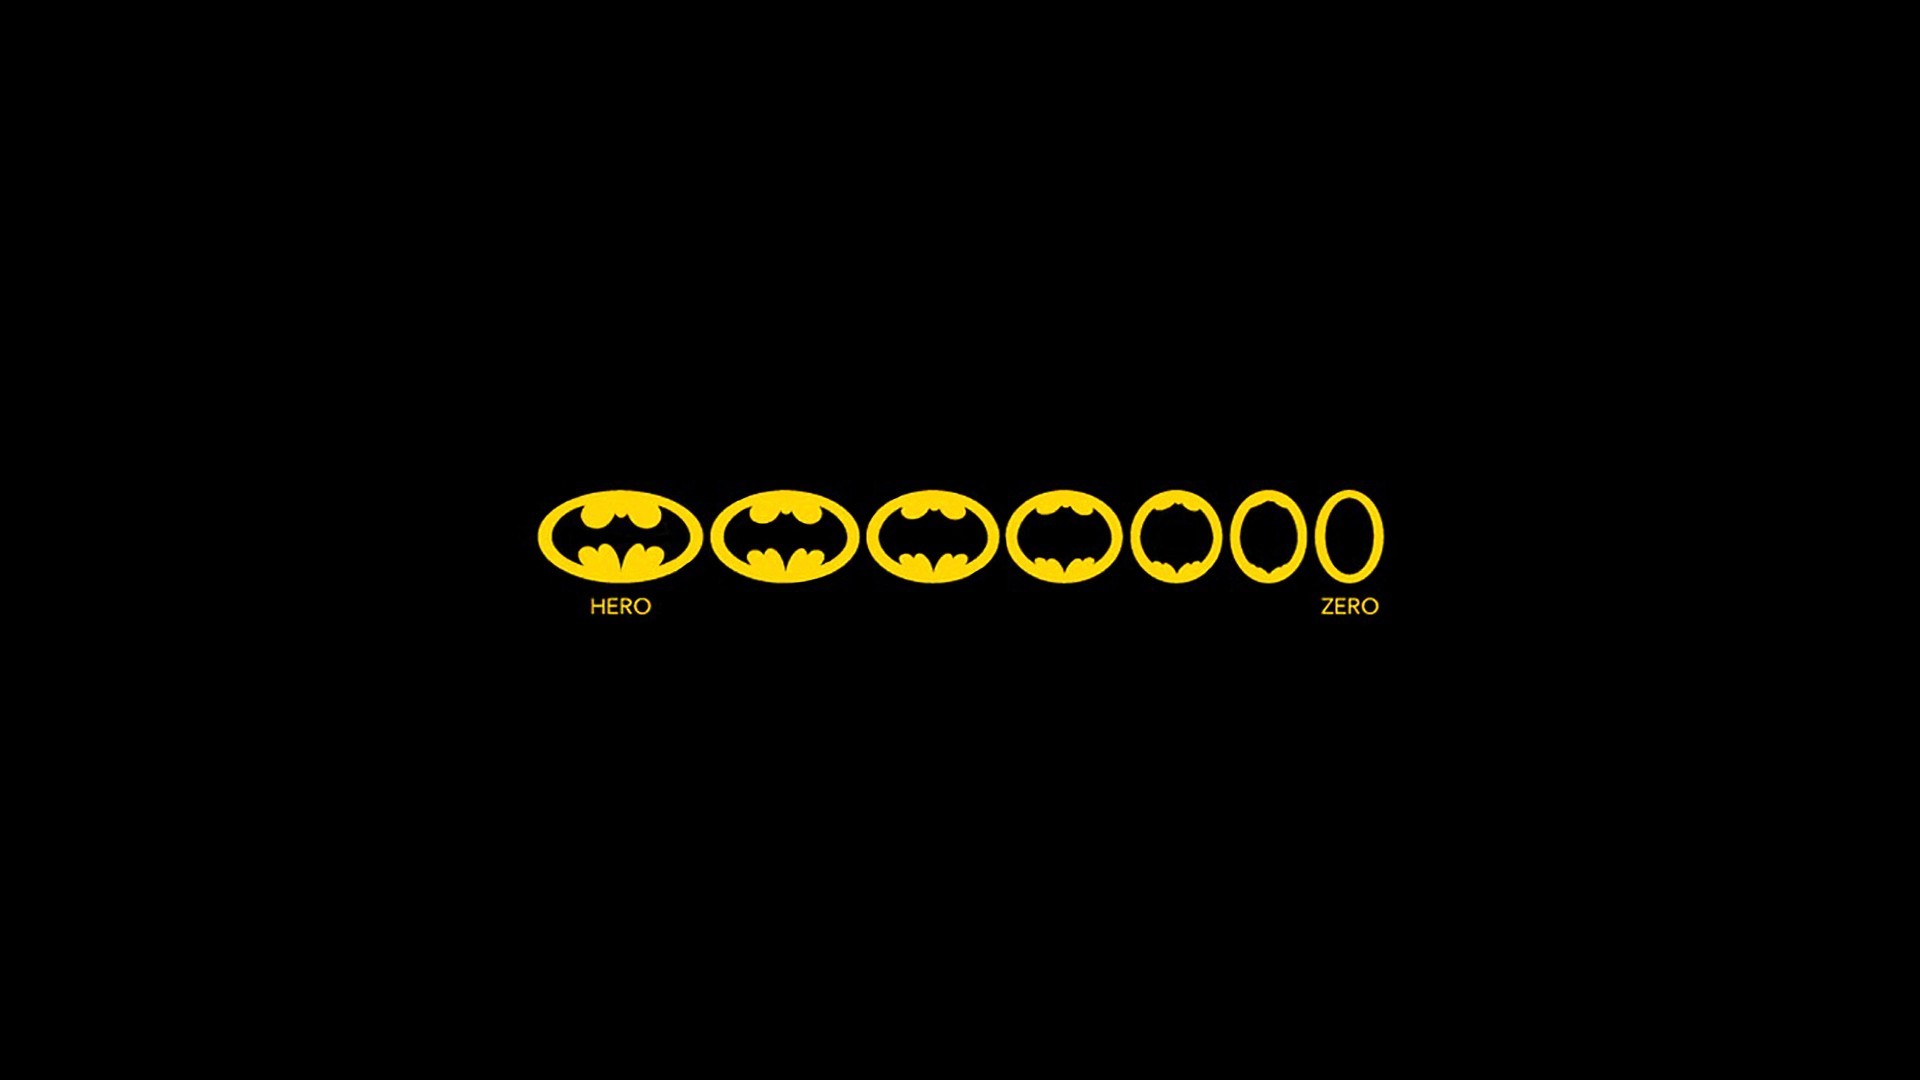 1920x1080 Batman funny logo.